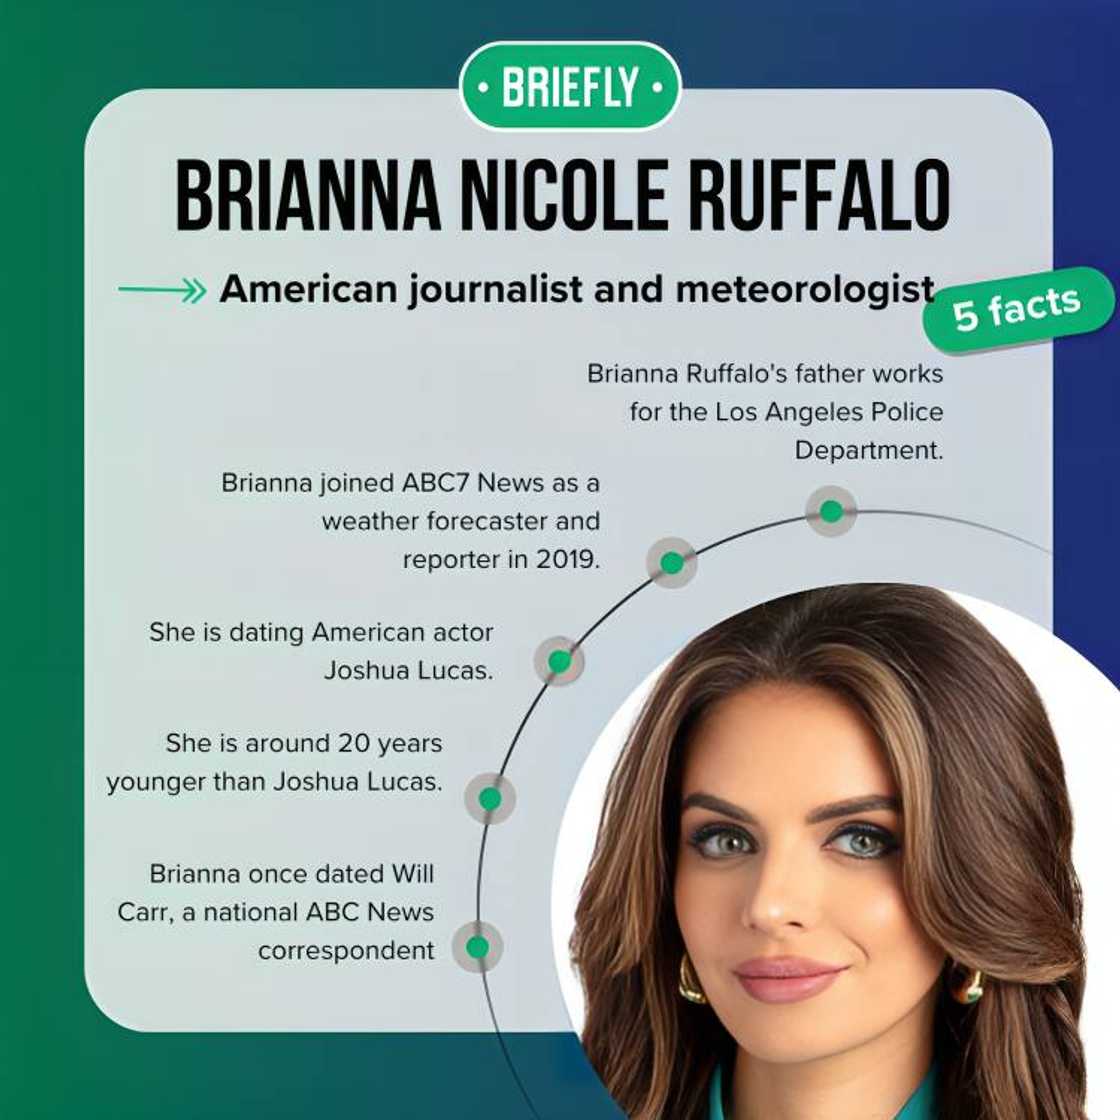 Brianna Ruffalo